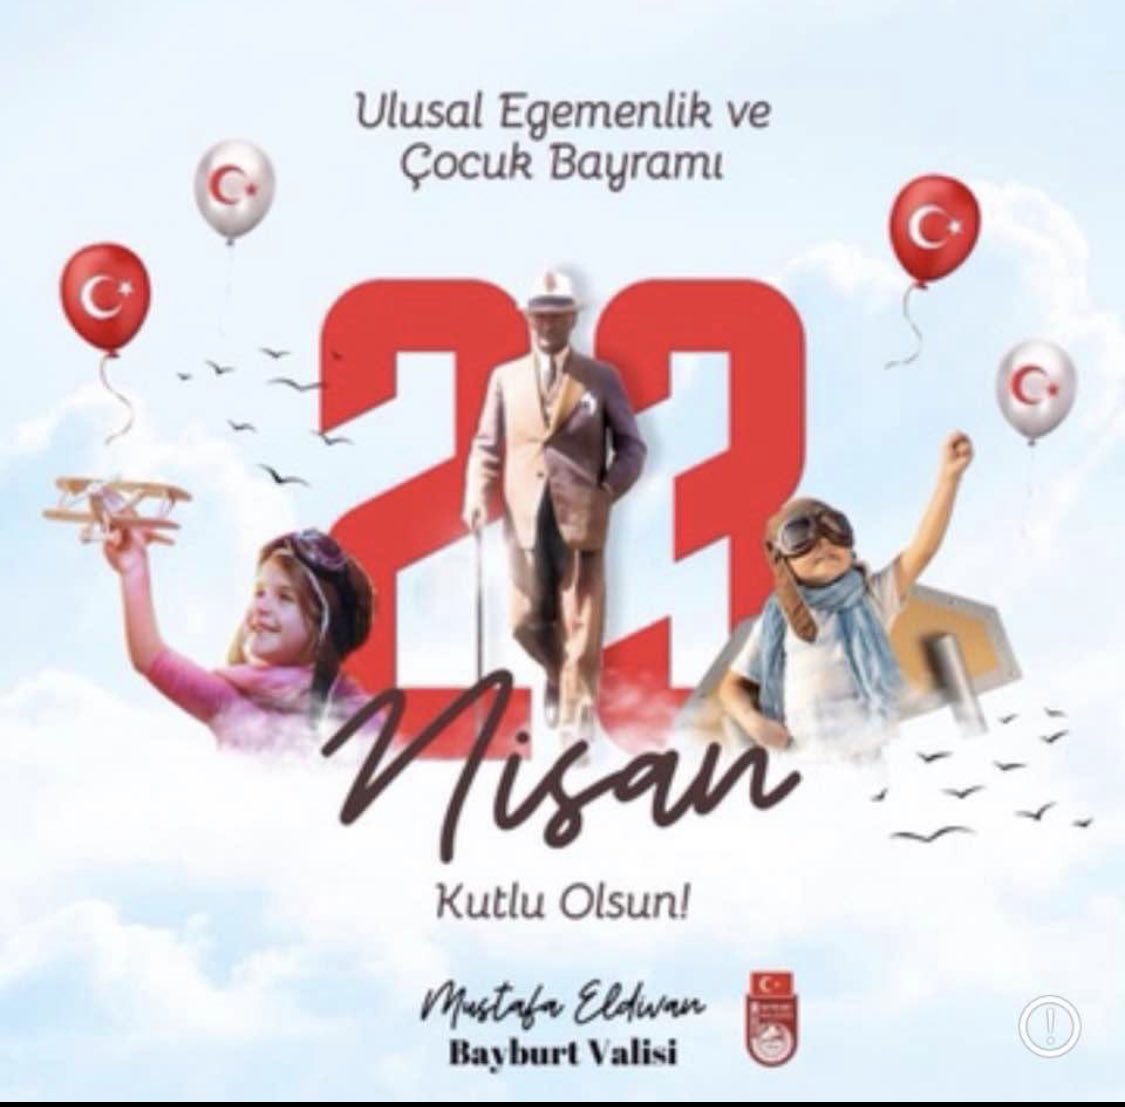 #23Nisan Ulusal Egemenlik ve Çocuk Bayramı kutlu olsun.🇹🇷🎈 Türkiye Büyük Millet Meclisi'nin açılışının 104. yıl dönümünde Cumhuriyetimizin kuruluşunda hayatlarını ortaya koyan Gazi Mustafa Kemal Atatürk ve silah arkadaşlarını şükranla anıyorum. Ruhları şad olsun.